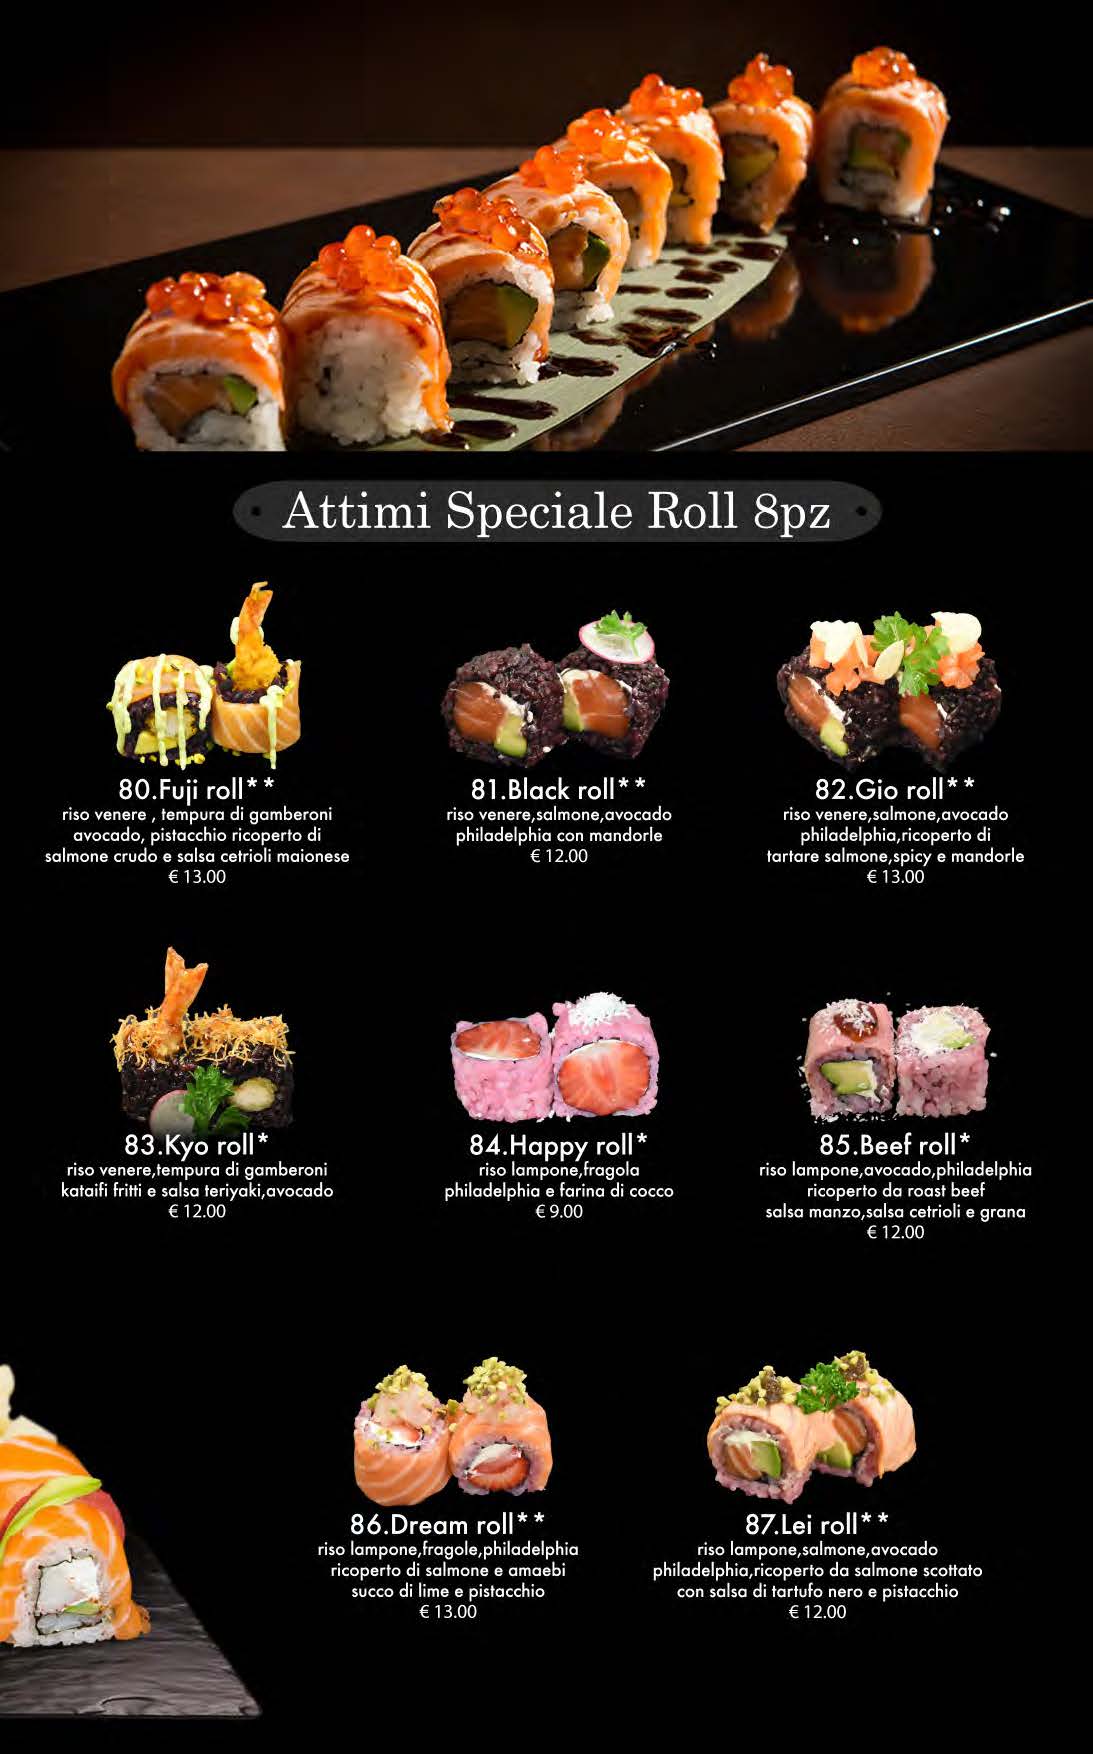 attimi ristorante giapponese padova menù cena pagina 09 speciale roll